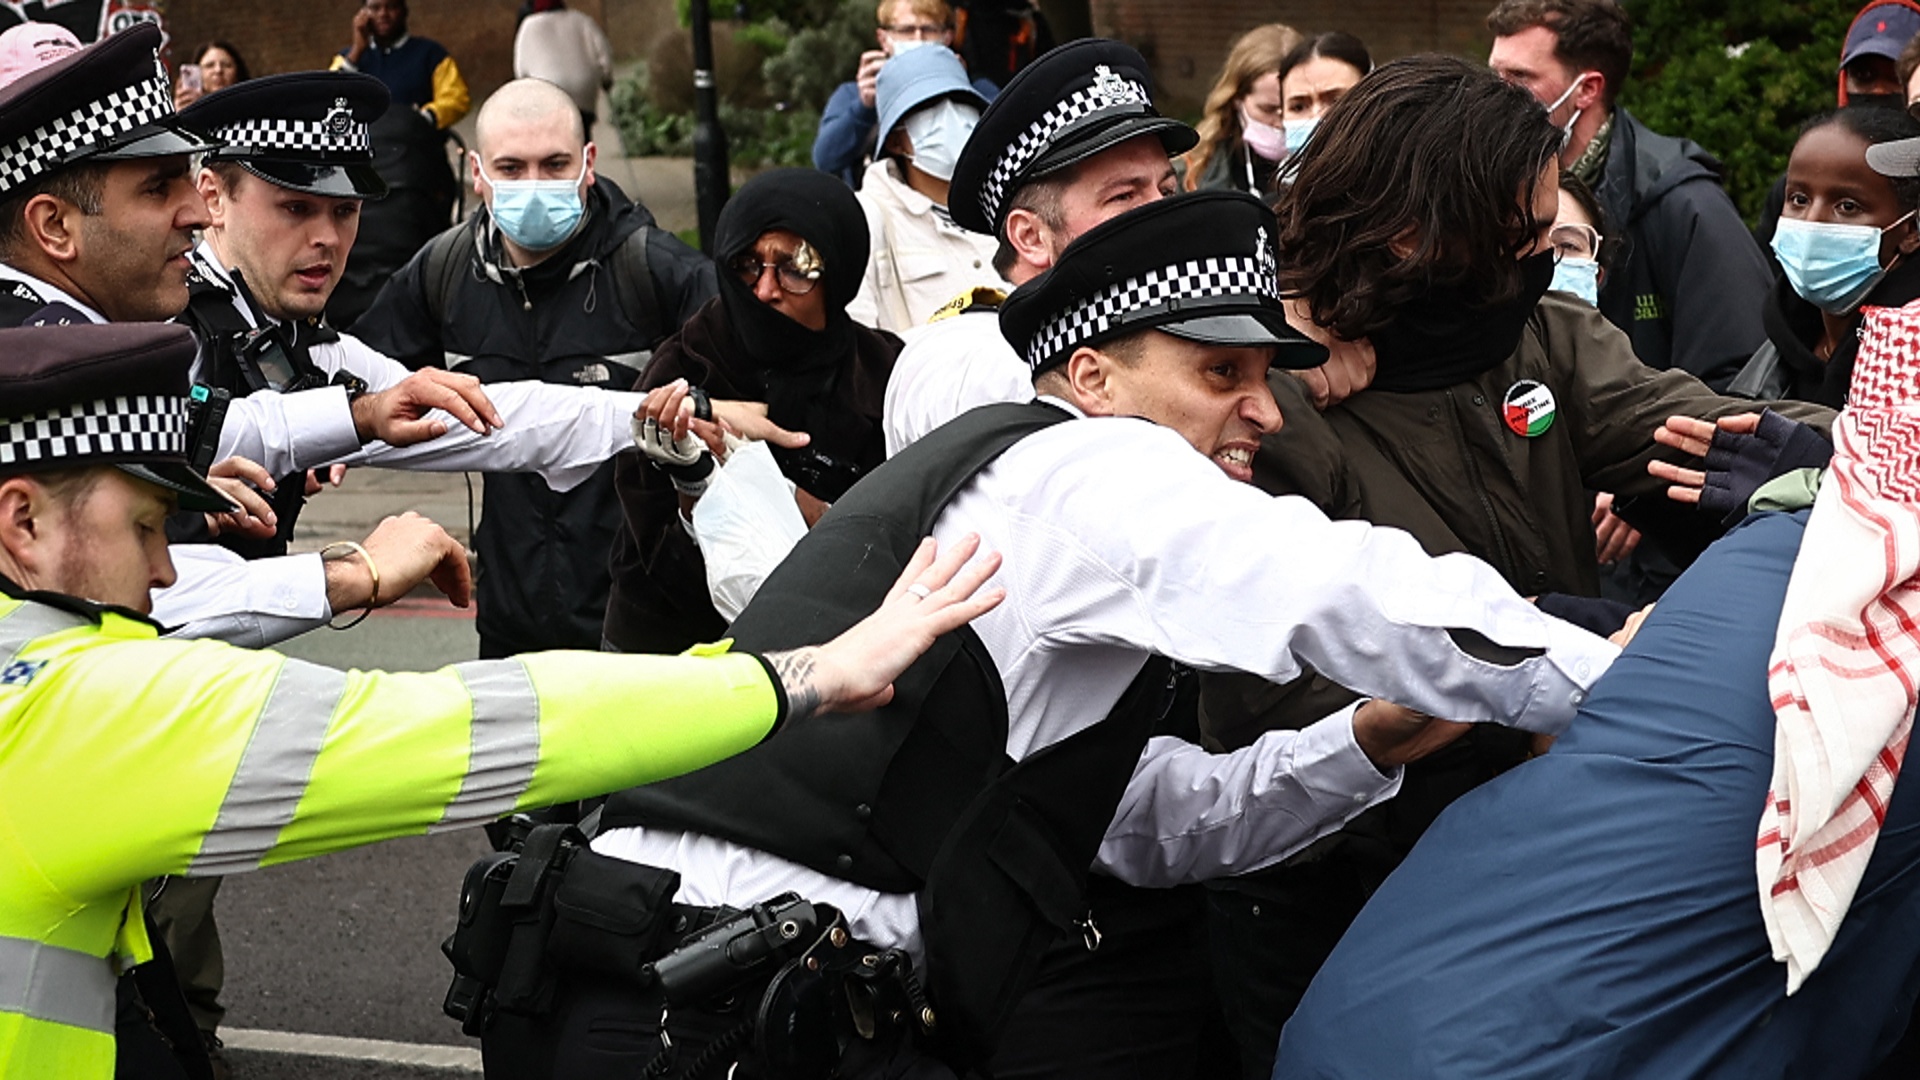 Стычки с полицией: активисты Лондона не дали увезти мигрантов на баржу